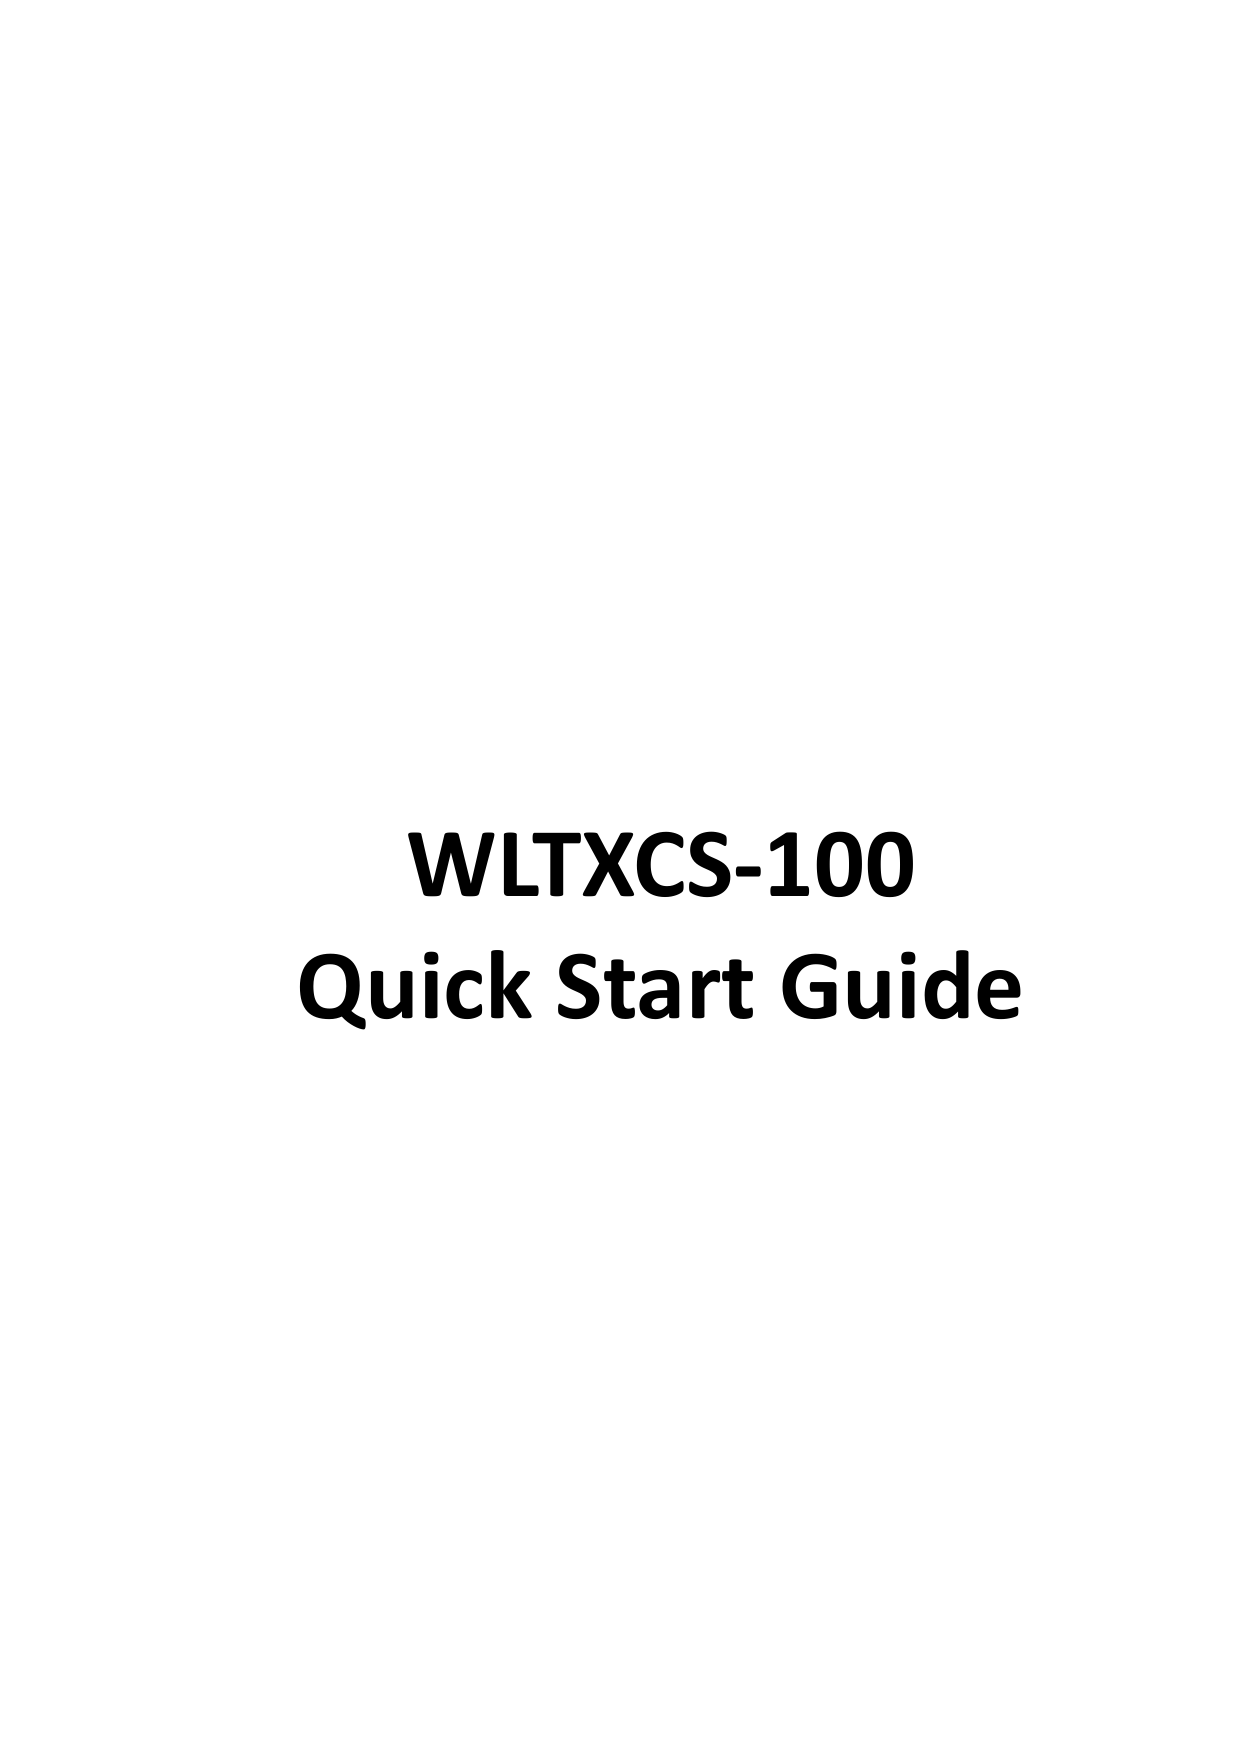         WLTXCS-100 Quick Start Guide   